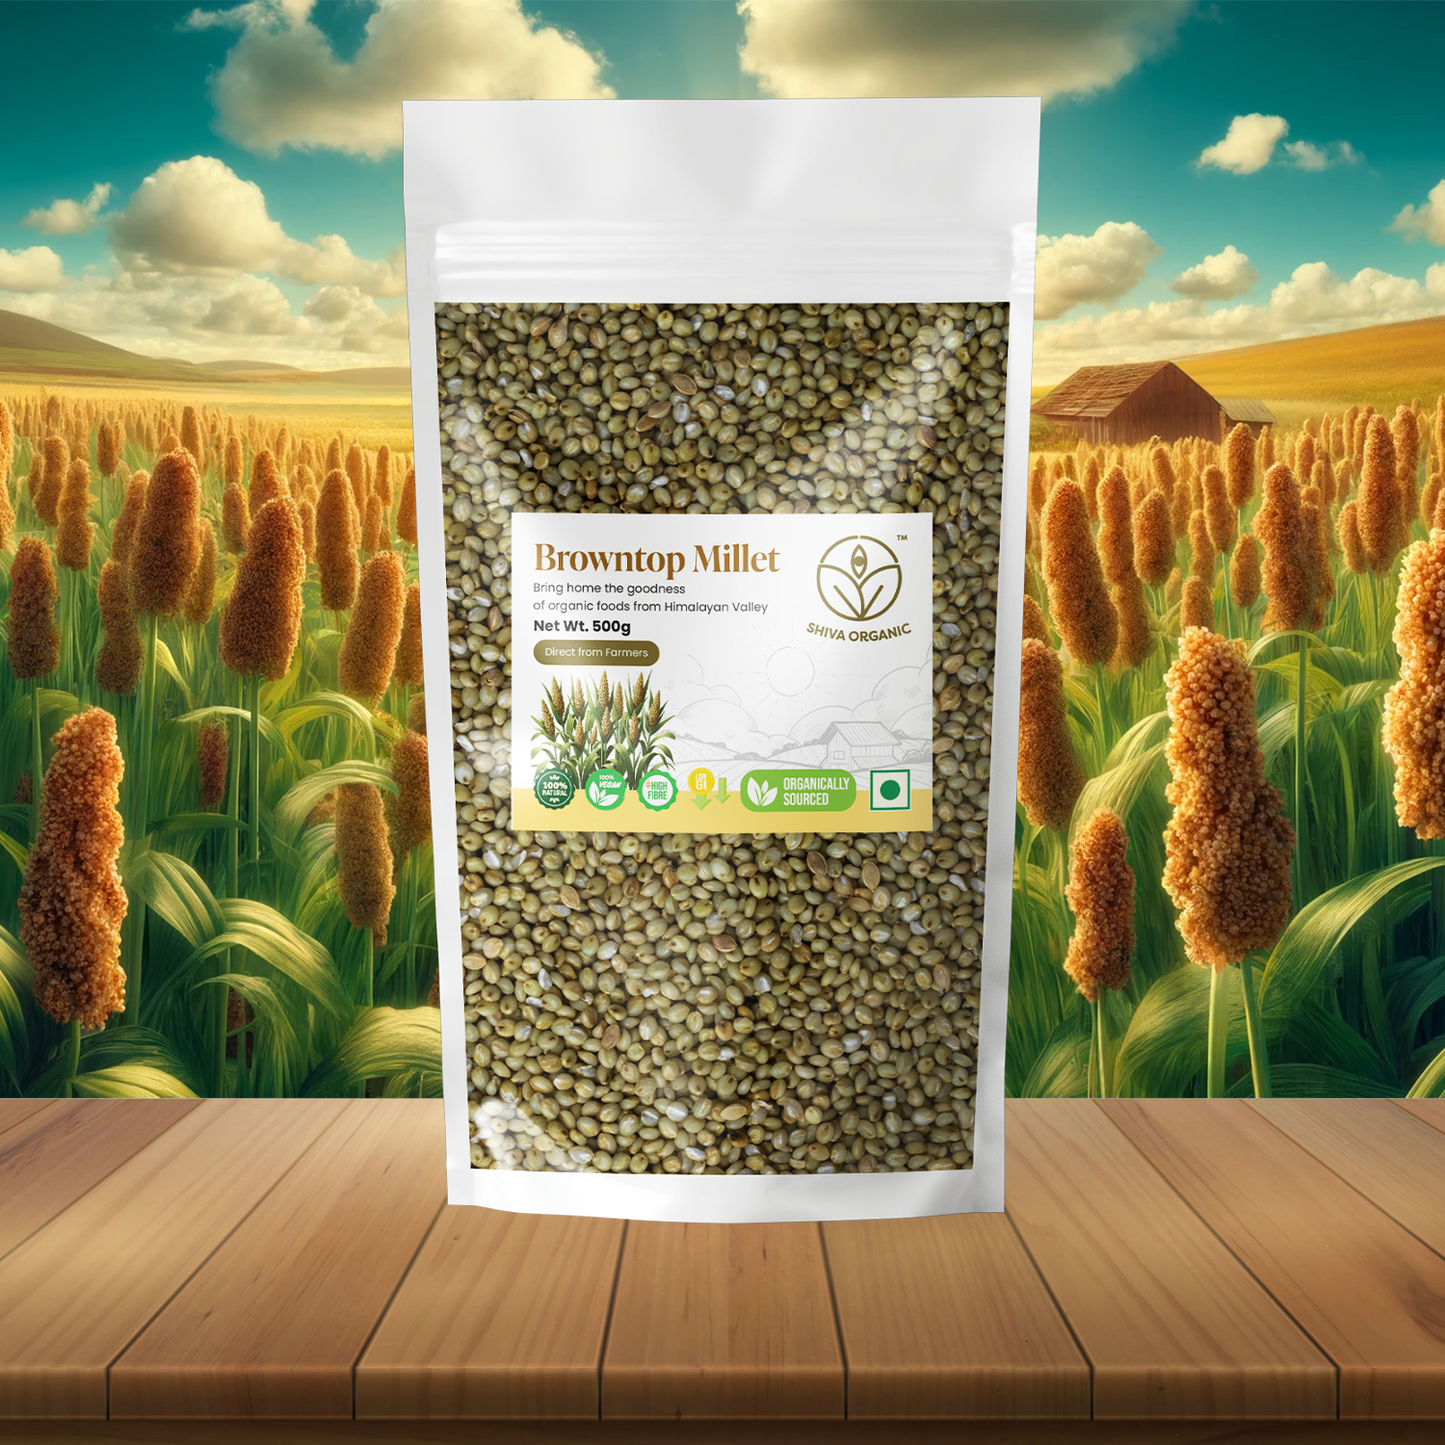 Browntop Millet 500g | Shiva Organic